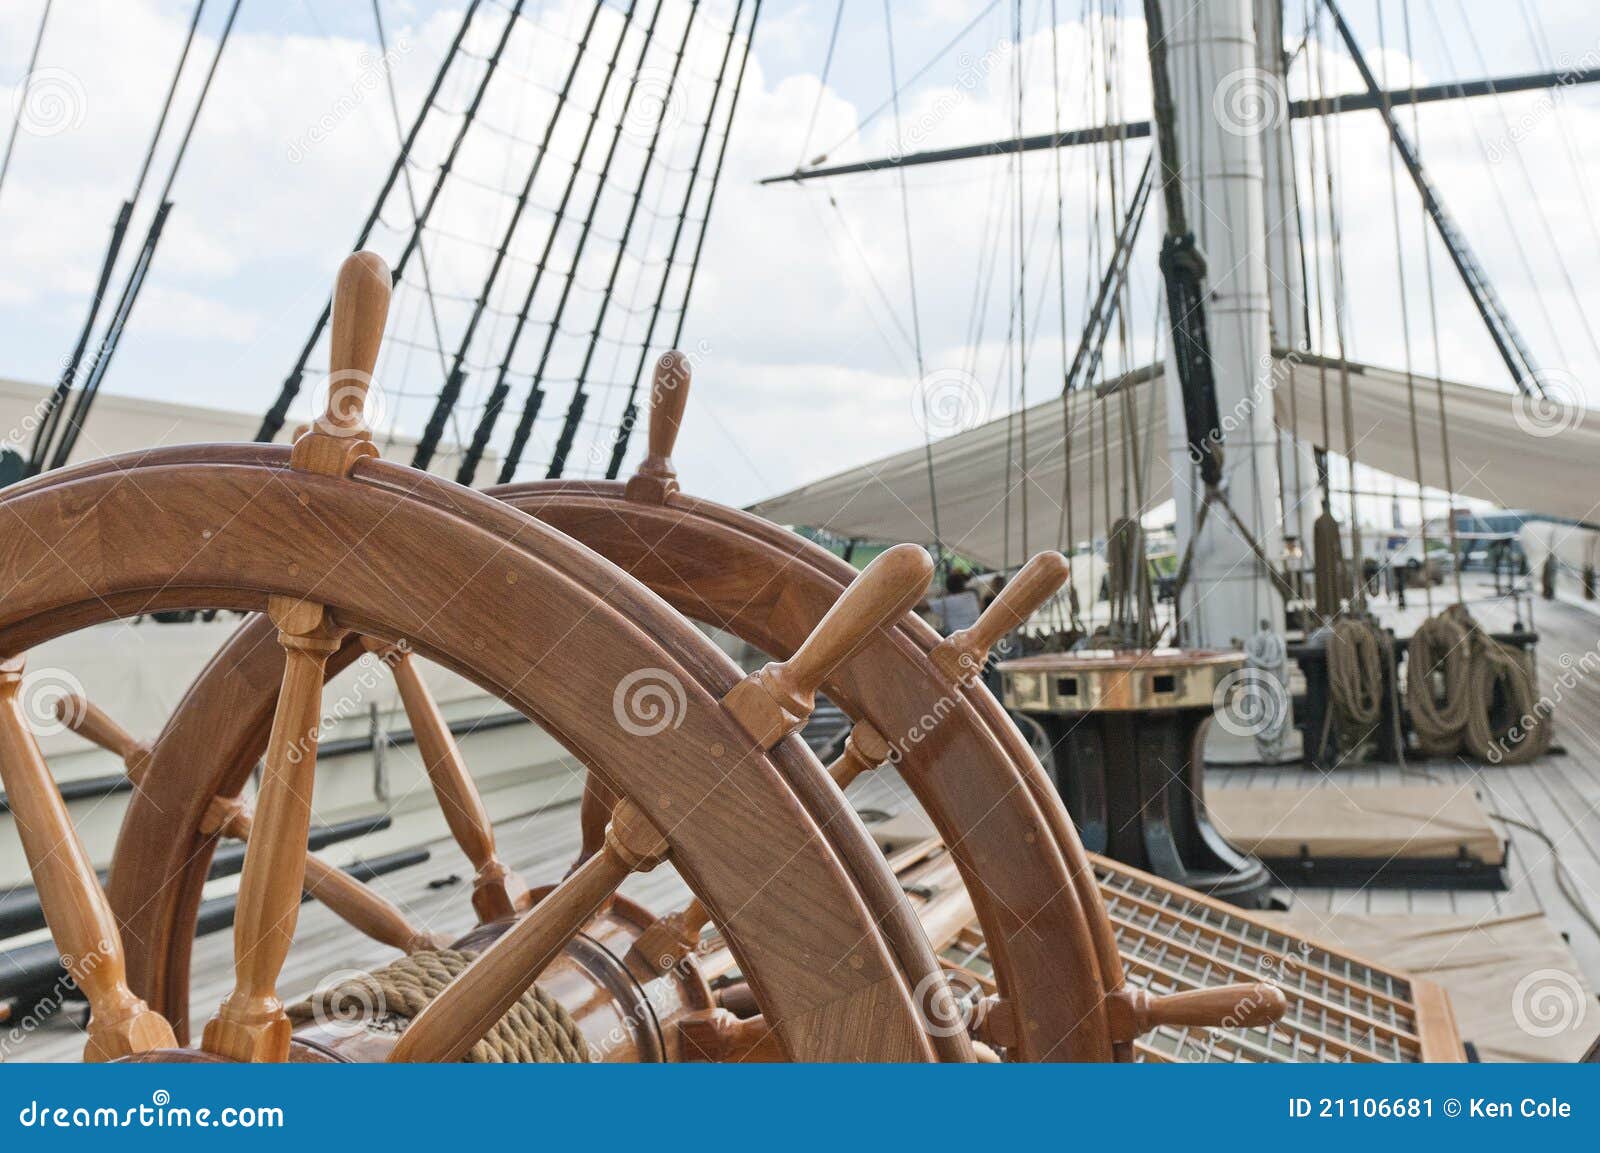 wheel of large sailing ship stock image - image: 21106681